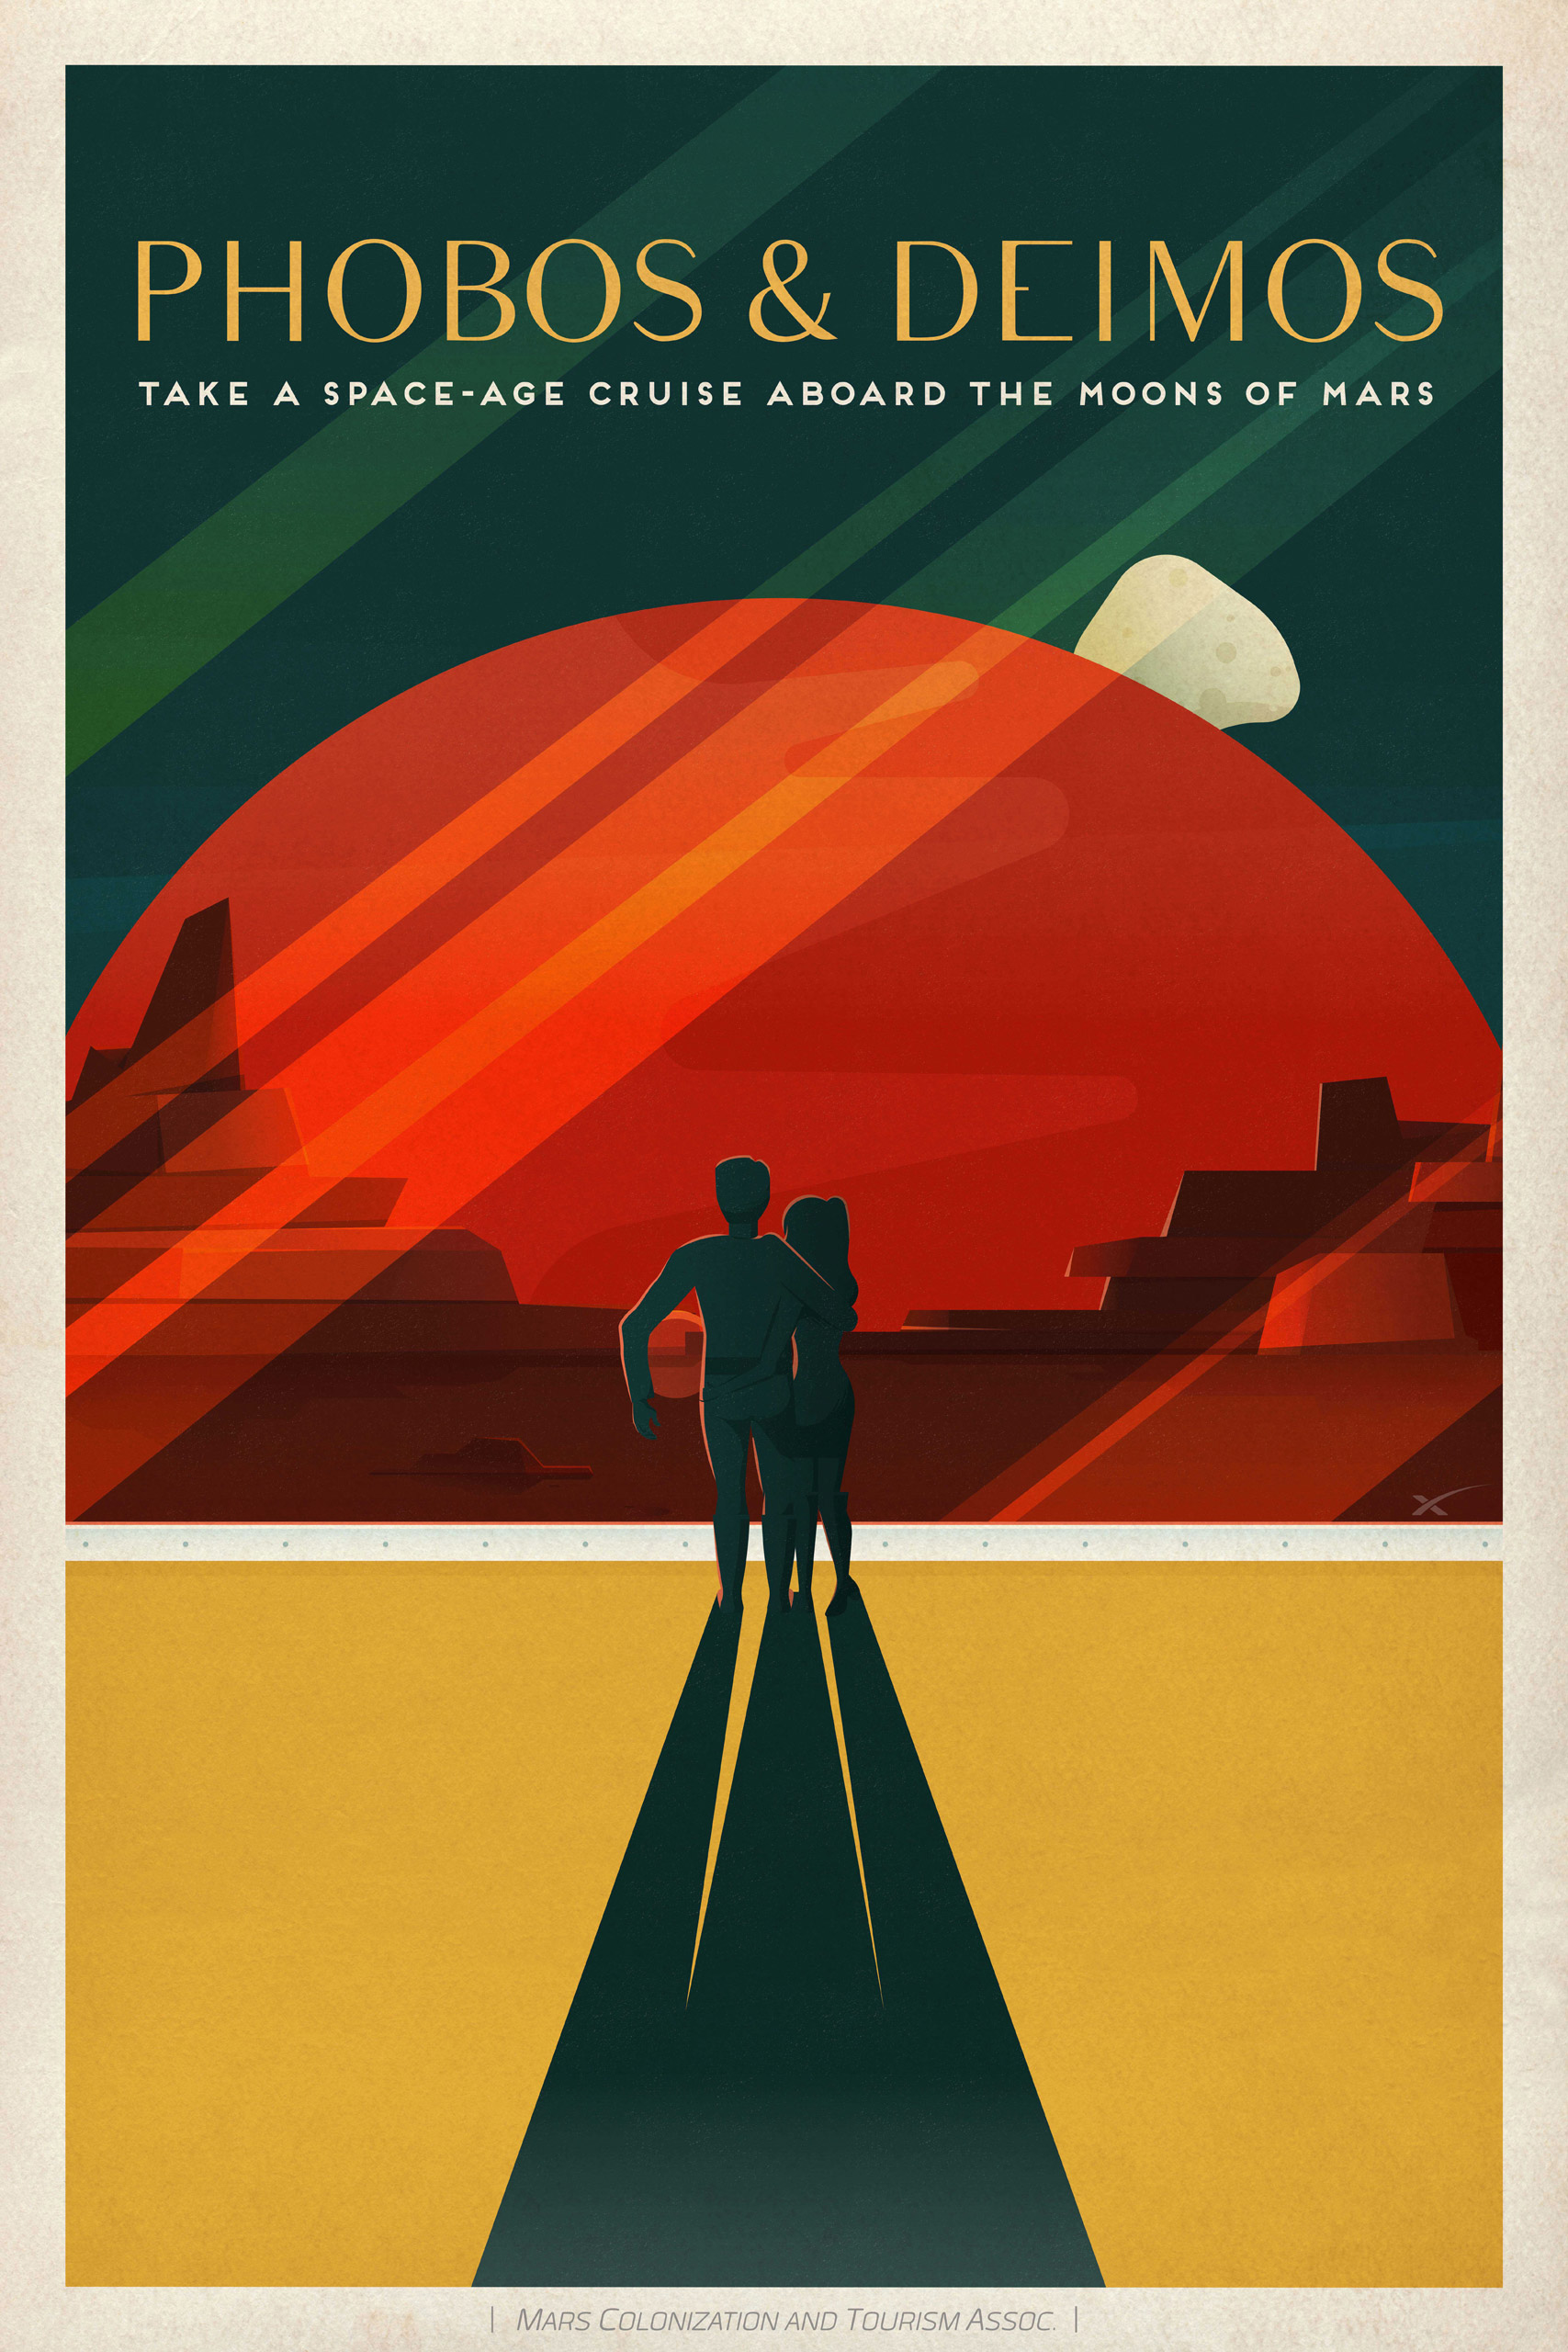 SpaceX Mars Tourism Poster: Phobos Deimos